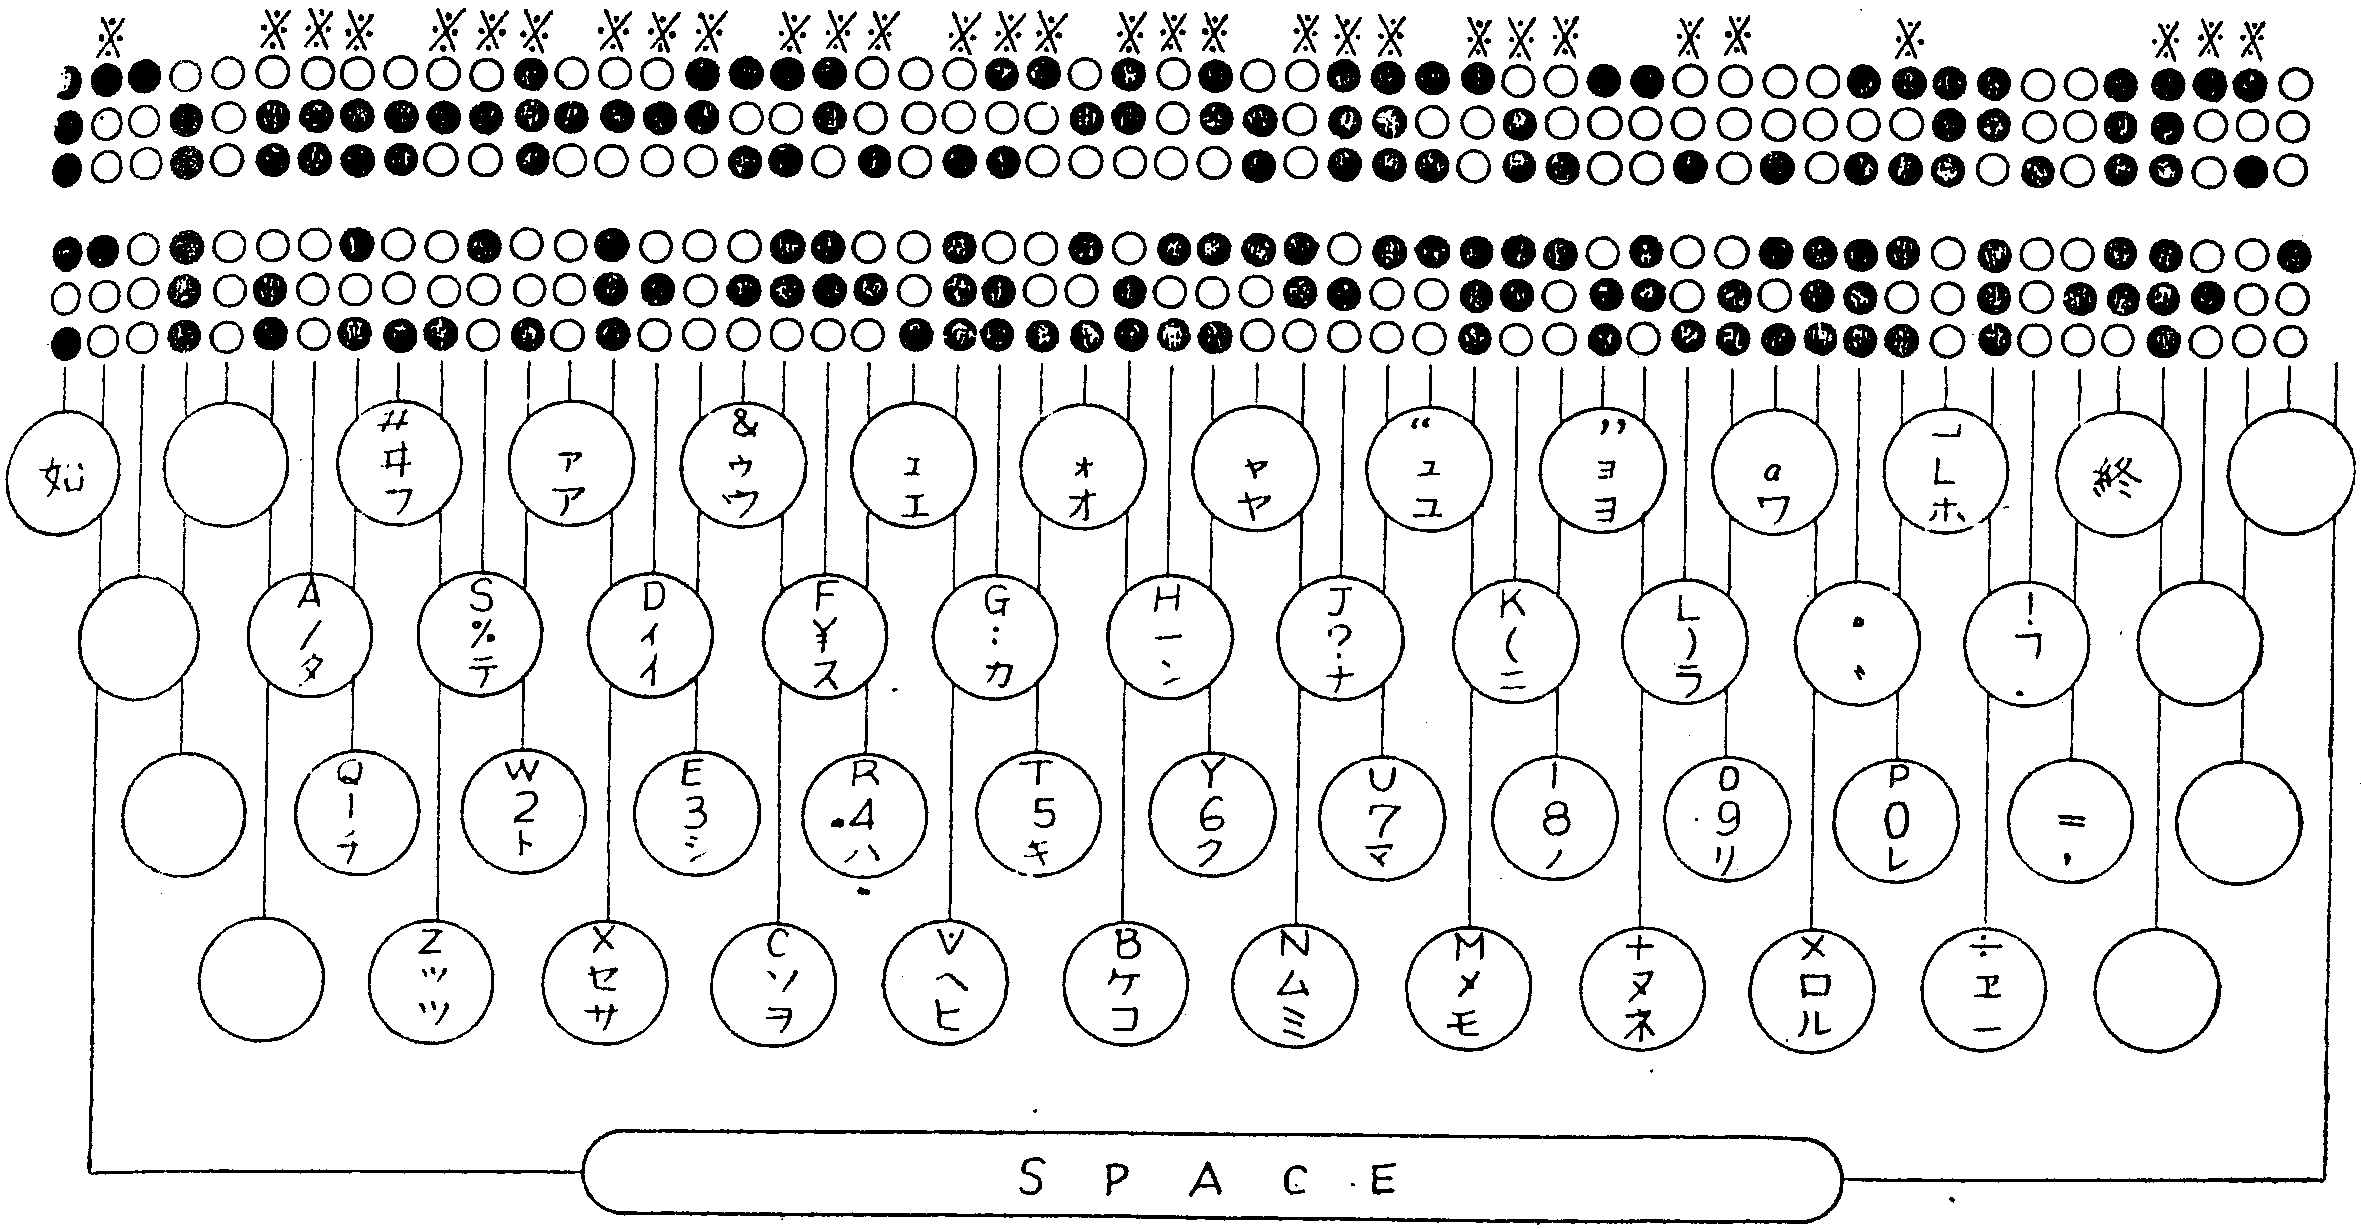 国鉄テレタイプのキー配列および文字コード案